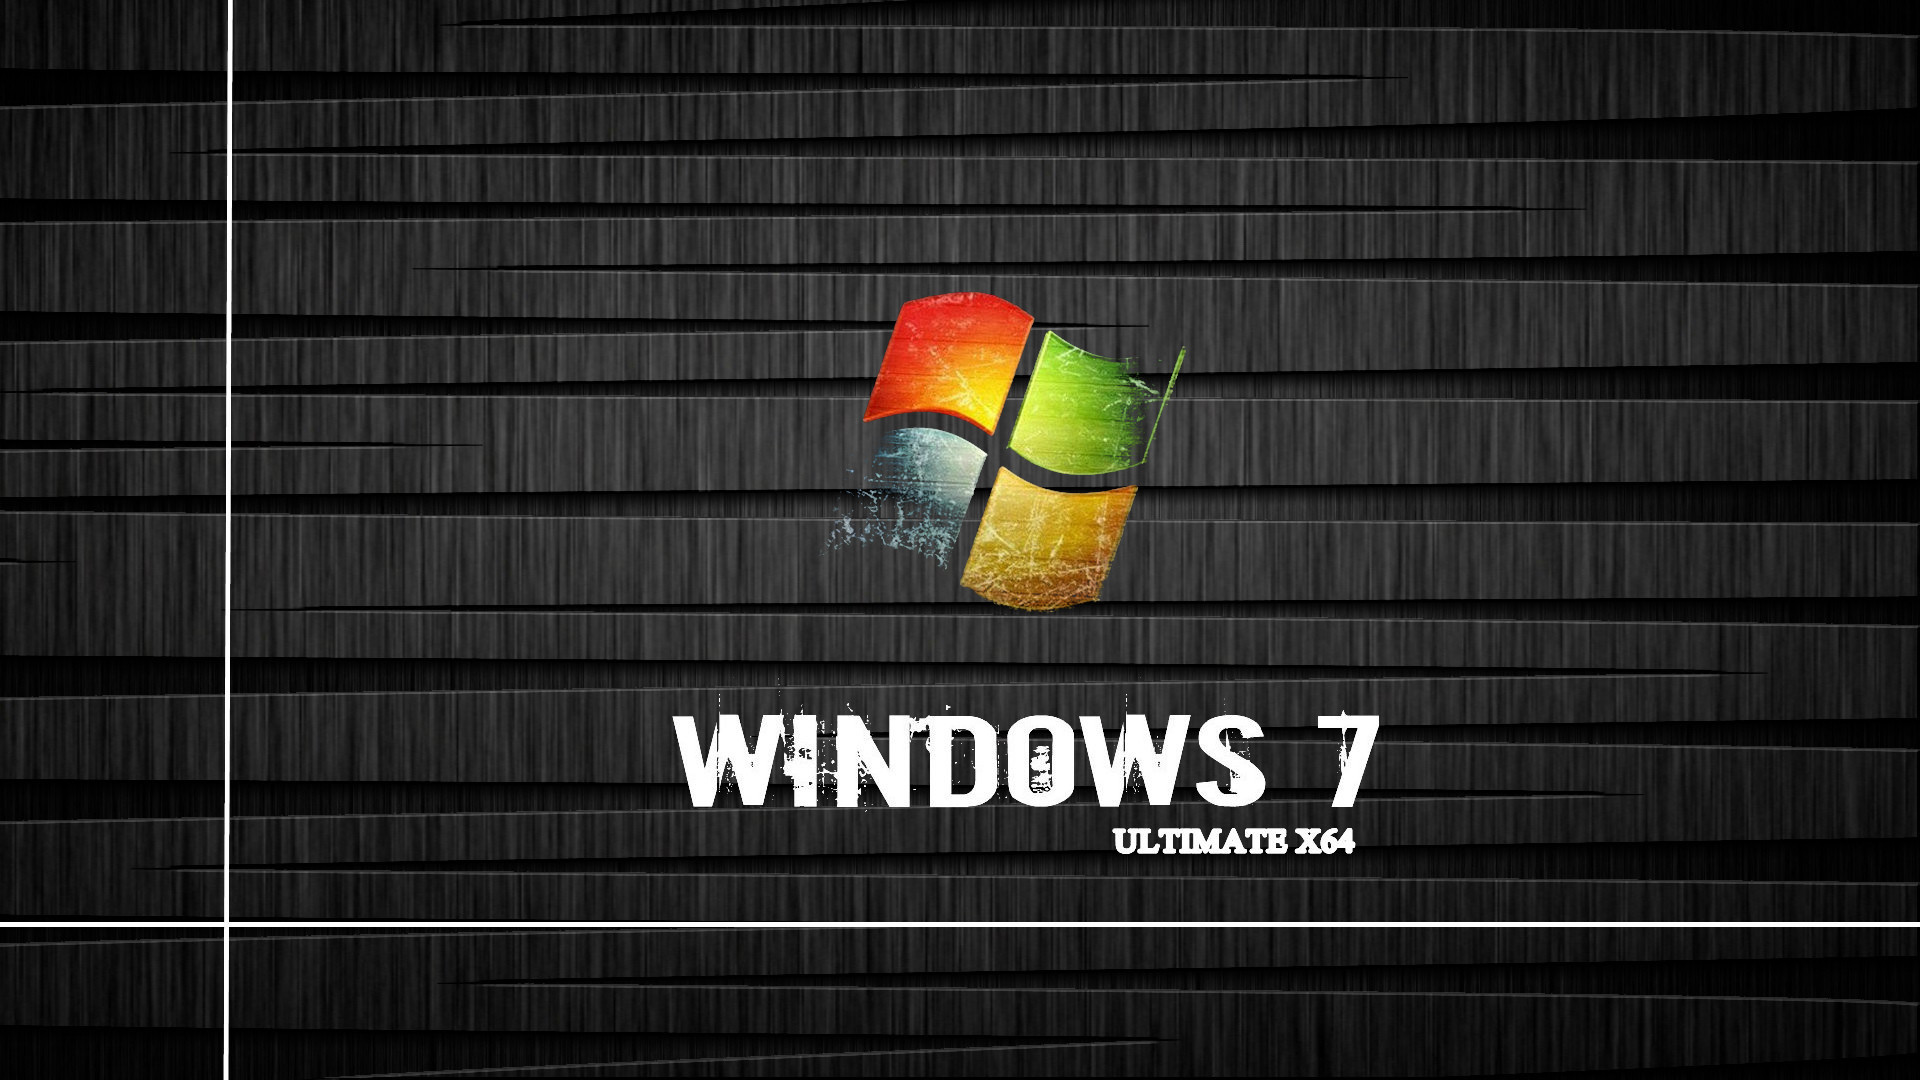 Старая версия обои. Виндовс 7. Windows 7 рабочий стол. Обои Windows 7. Обои Windows 7 Ultimate.